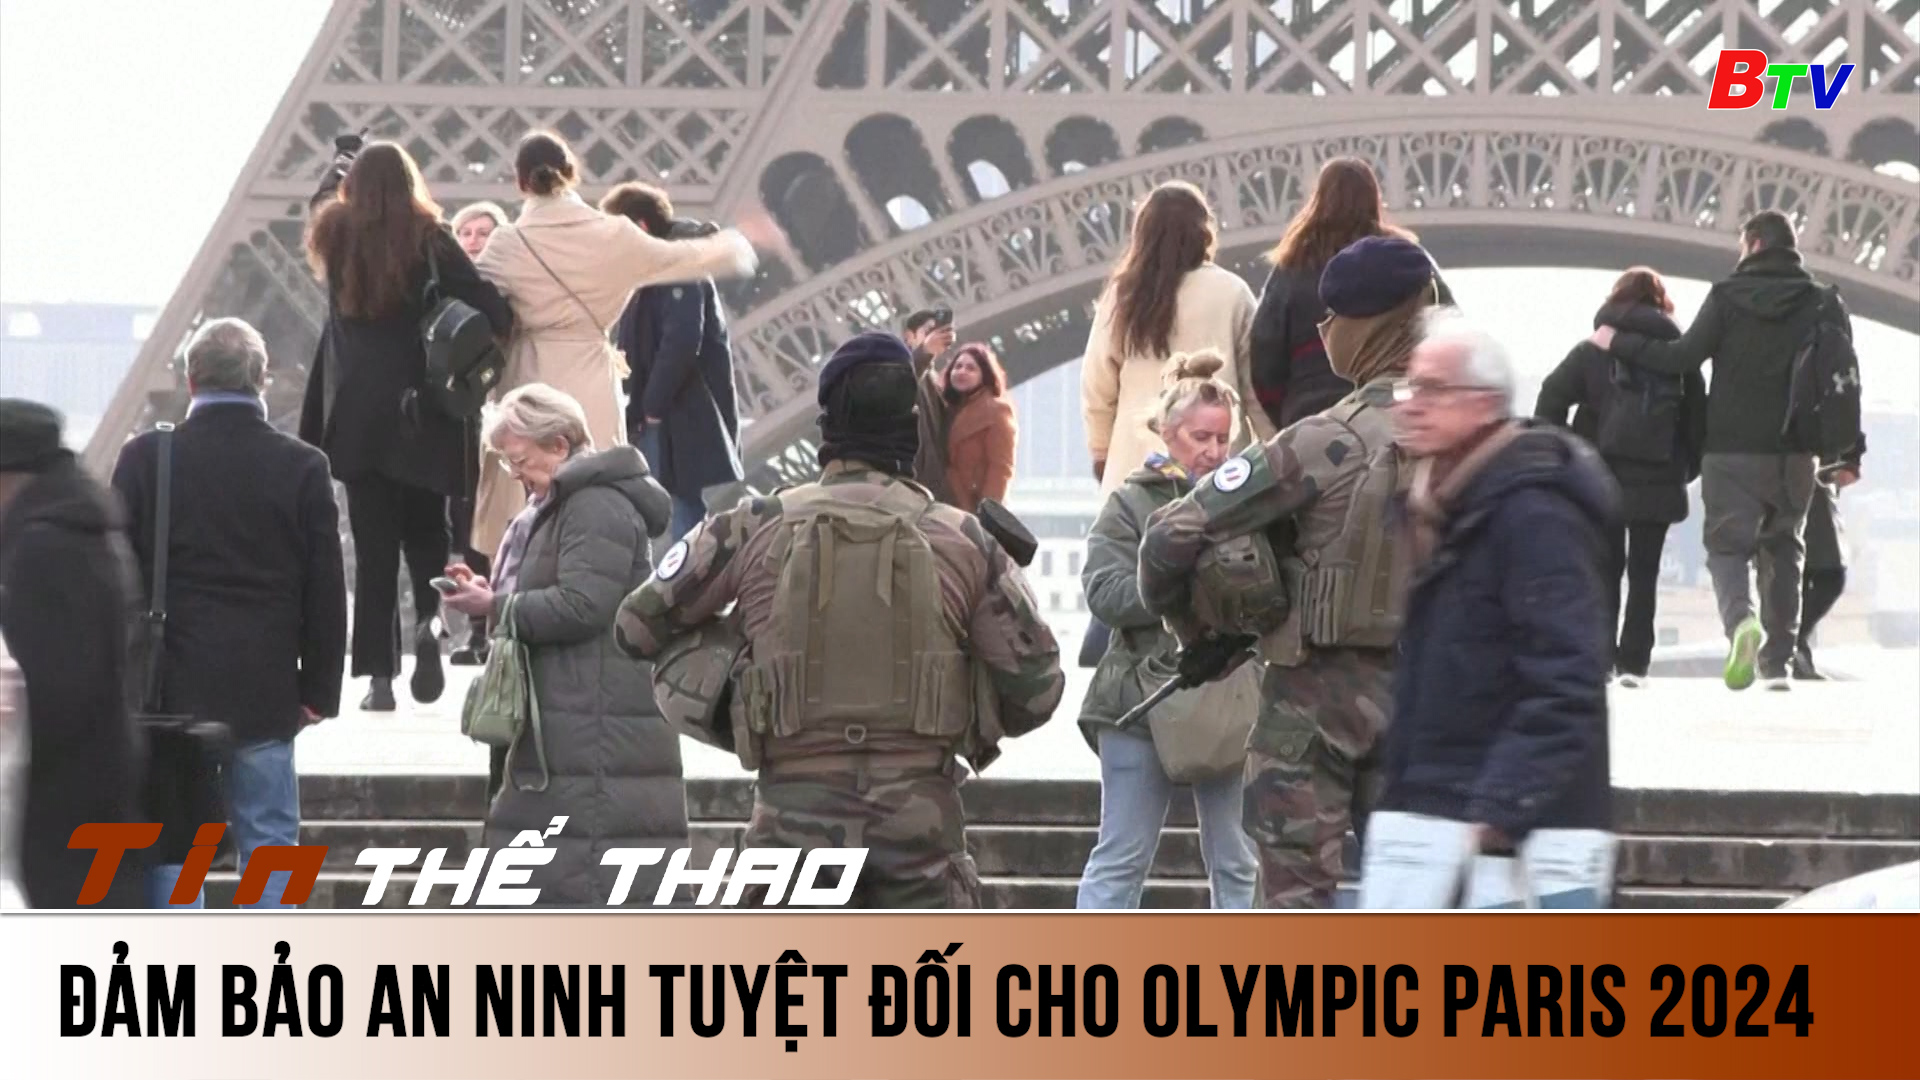 Đảm bảo an ninh tuyệt đối cho Olympic Paris 2024 | Tin Thể thao 24h